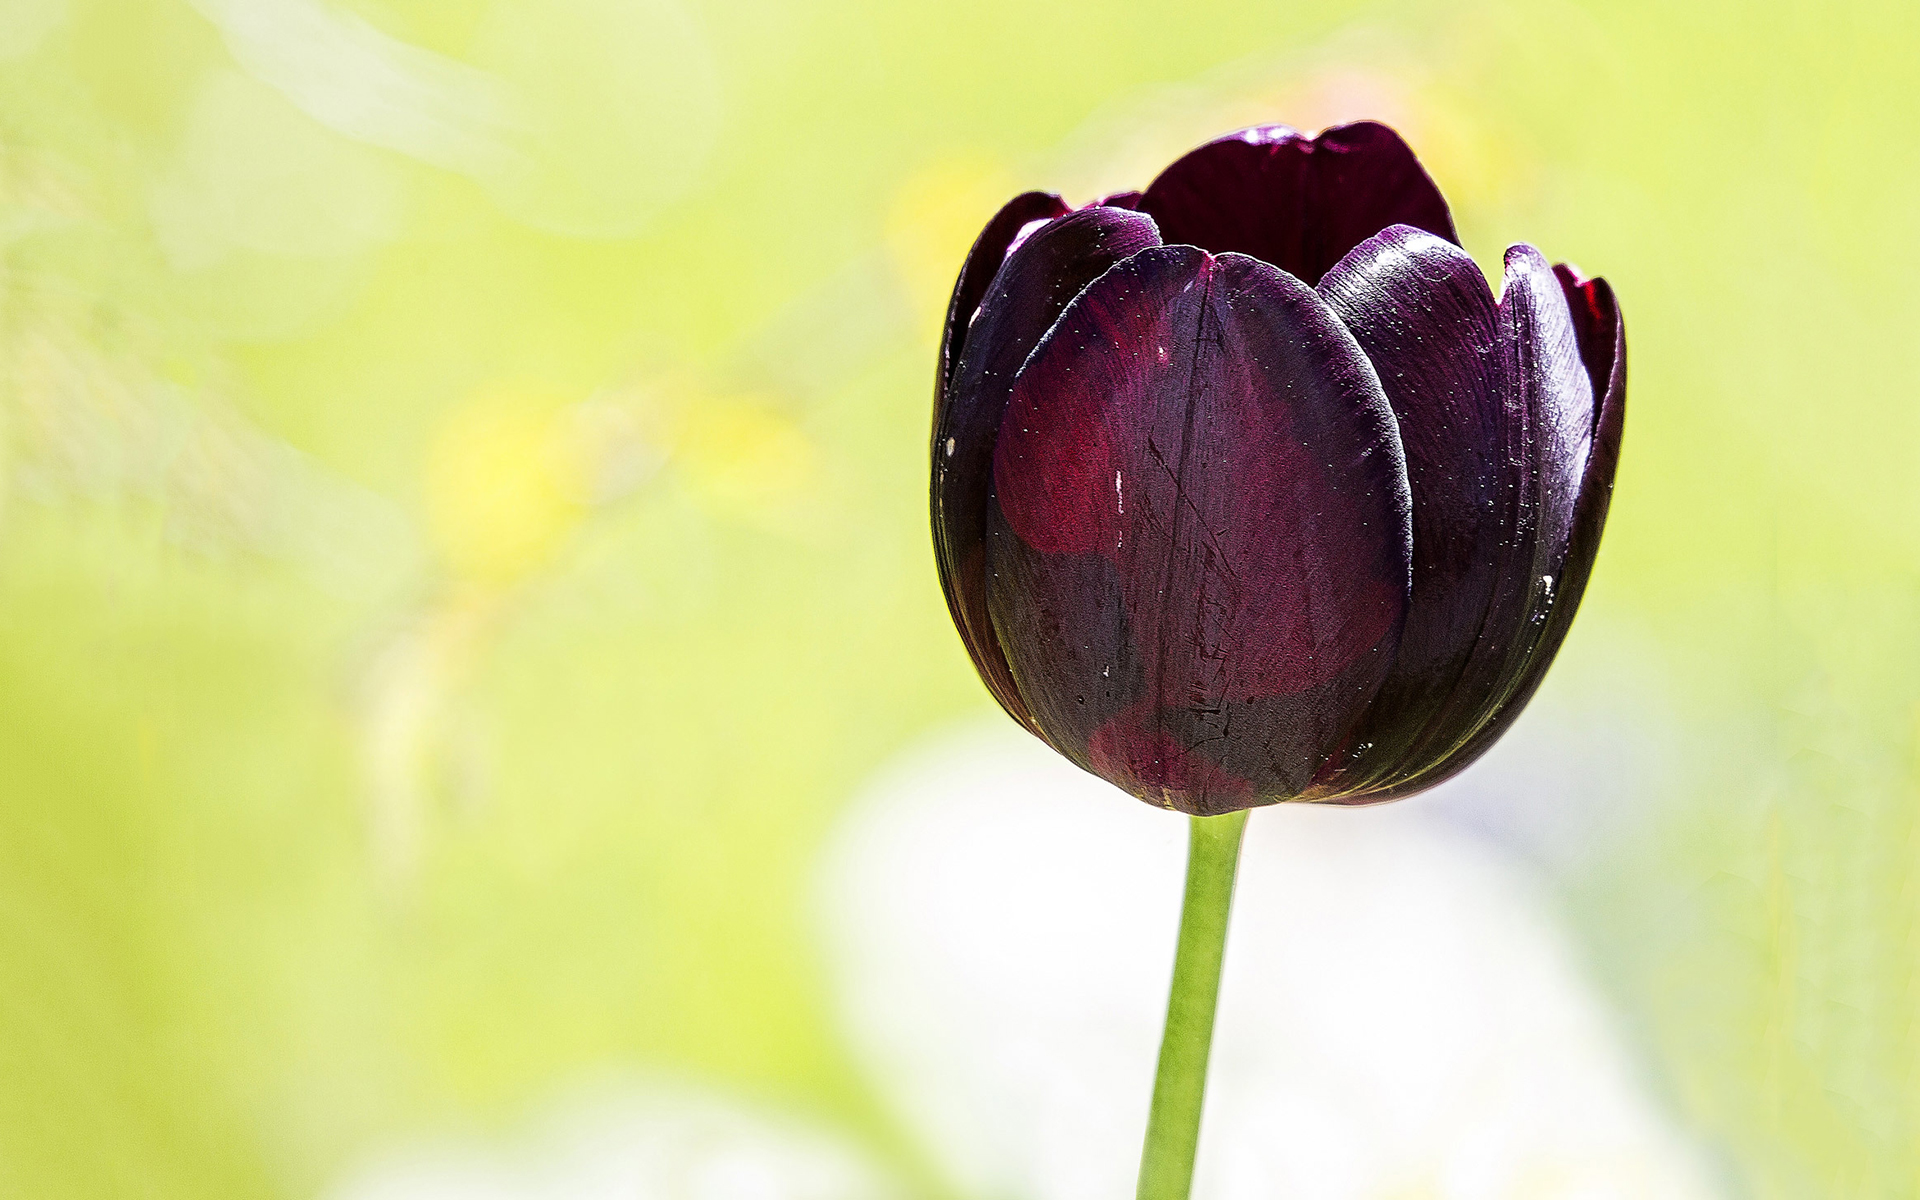 Tuyển tập hình ảnh hoa tulip đen đẹp nhất – Loài hoa chân thành, thủy chung - [Kích thước hình ảnh: 1920x1200 px]